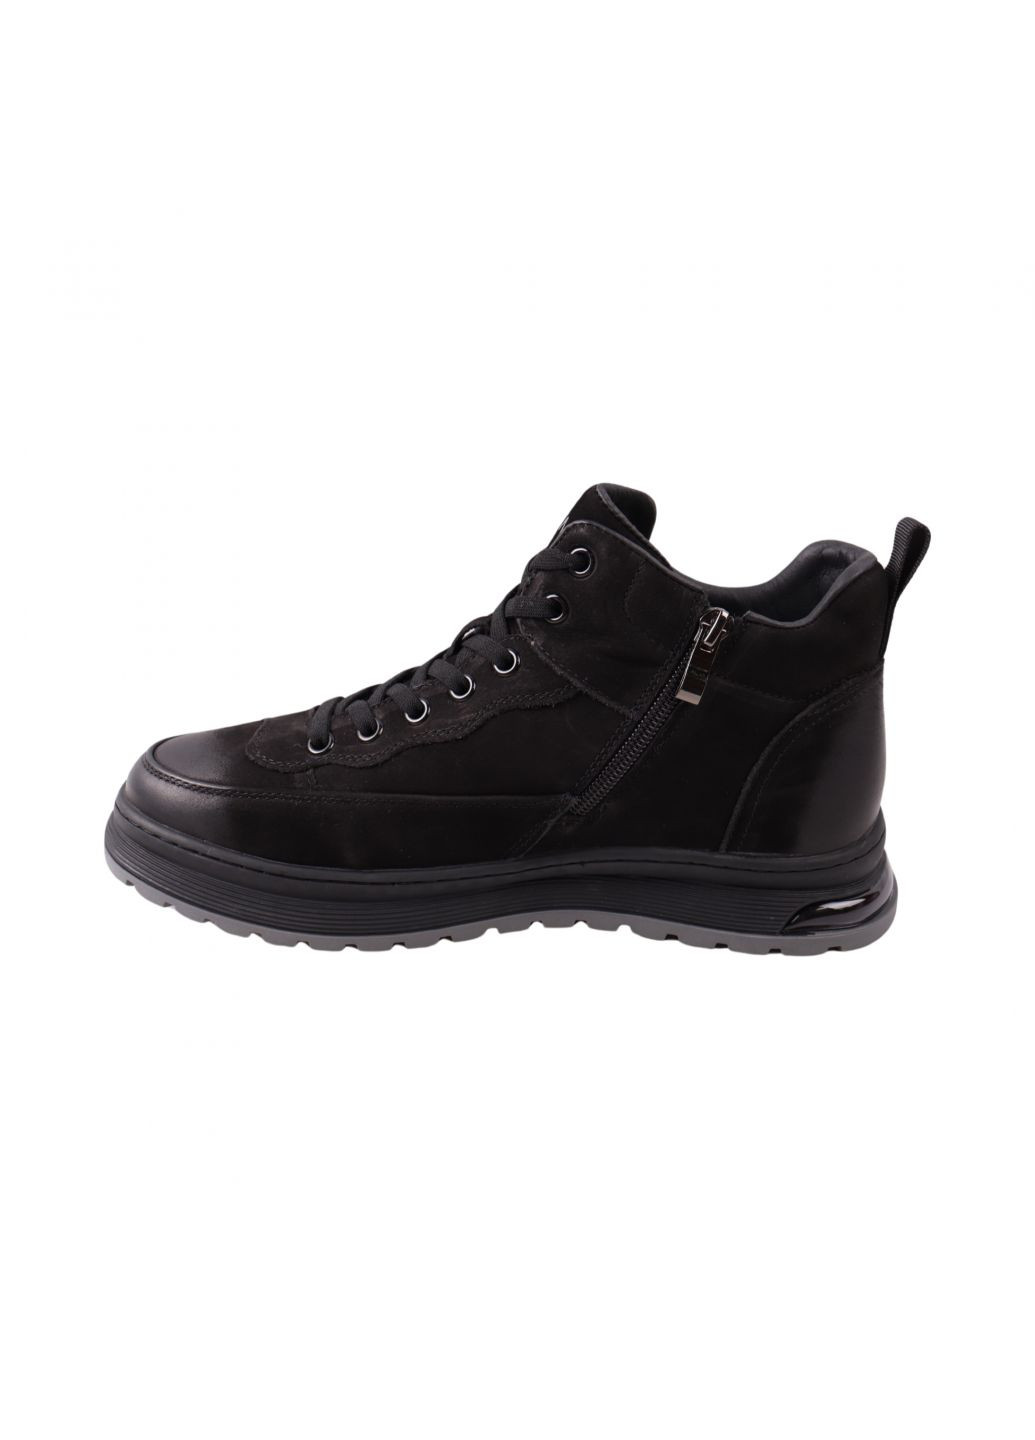 Черные ботинки мужские черные натуральный нубук Clemento